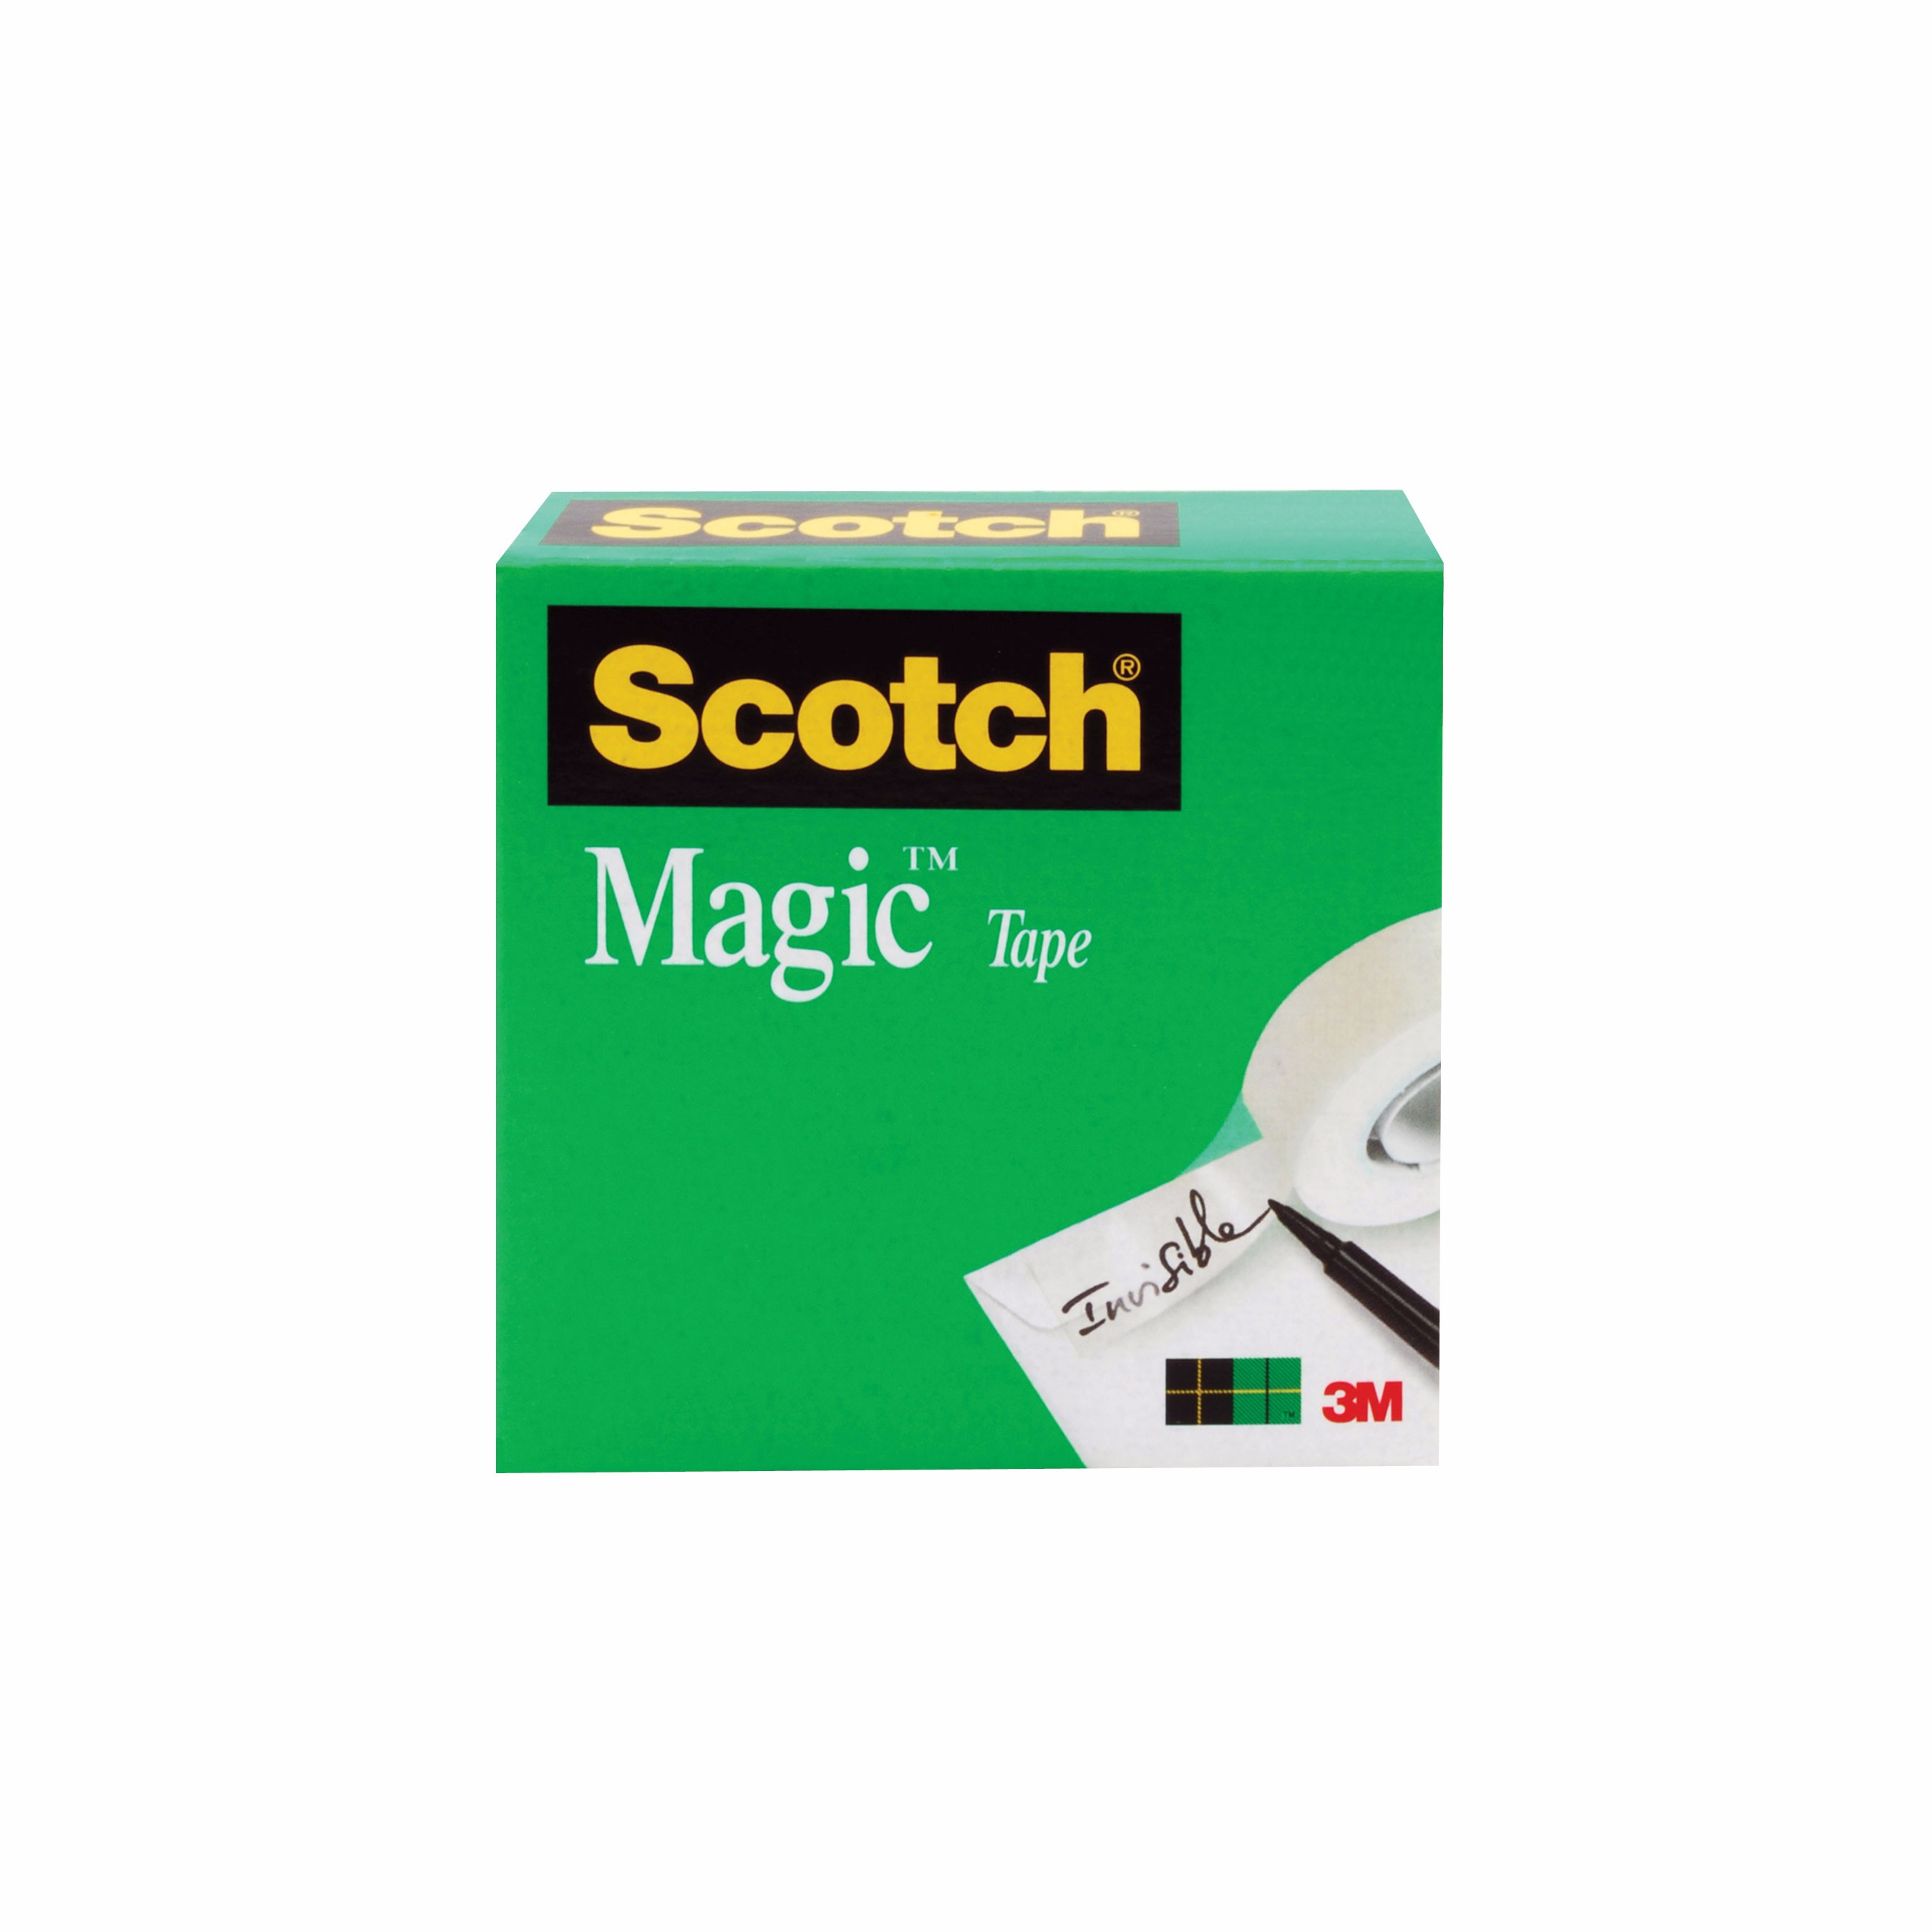 Scotch Wall-Safe Tape - 18.06 yd Length x 0.75 Width - Dispenser